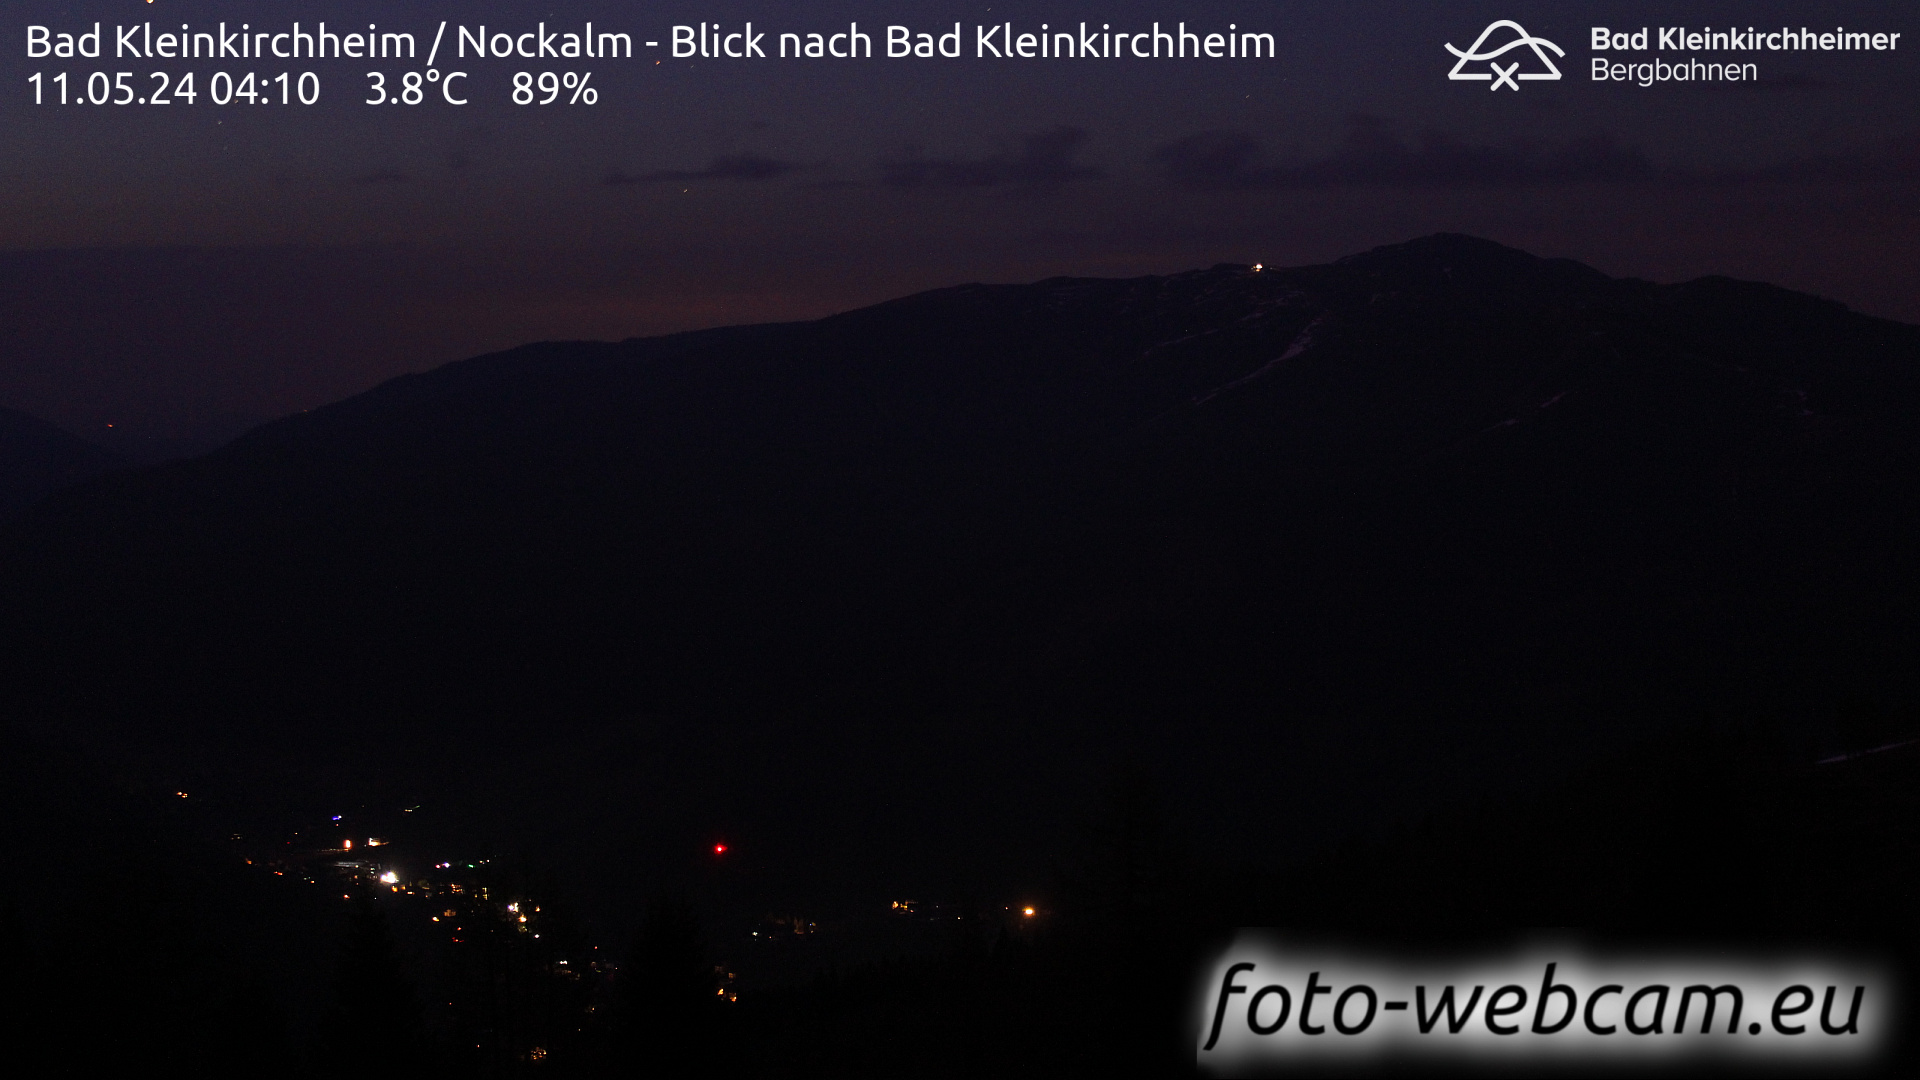 Bad Kleinkirchheim Man. 04:17